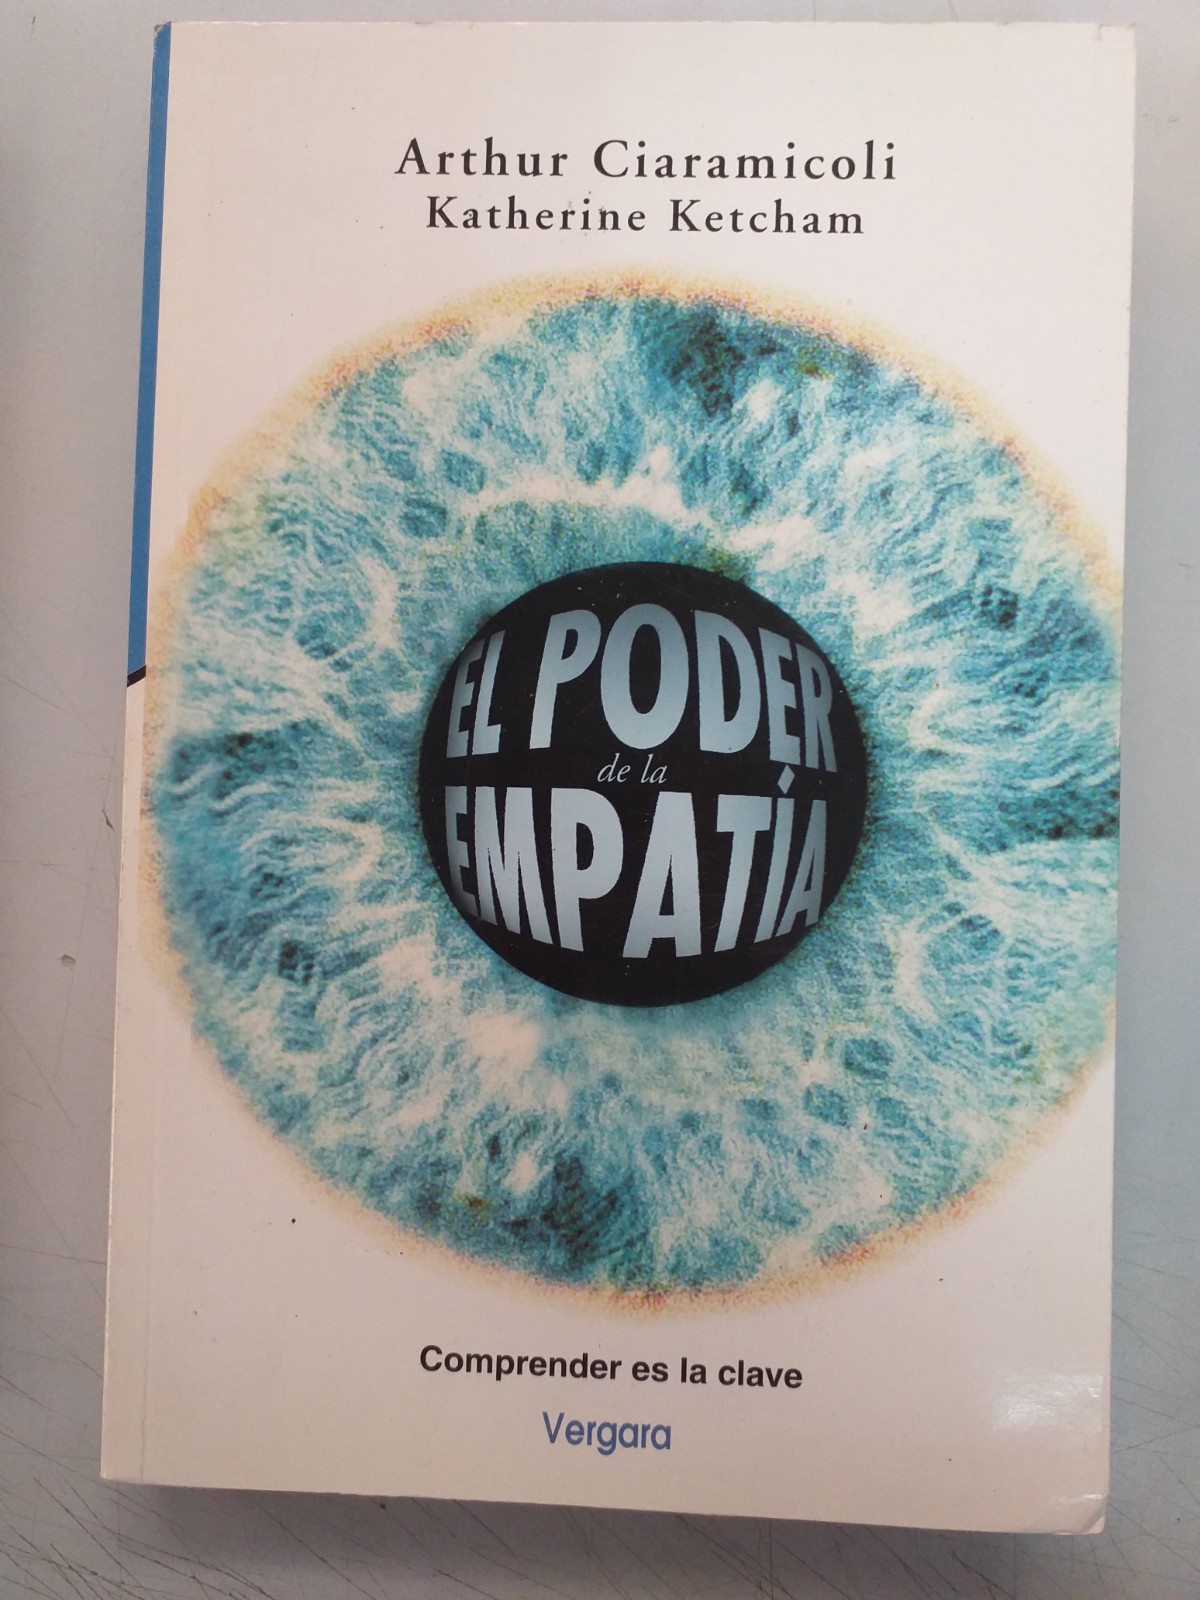 EL PODER DE LA EMPATIA - Arthur Ciaramicoli - Katherine Ketcham